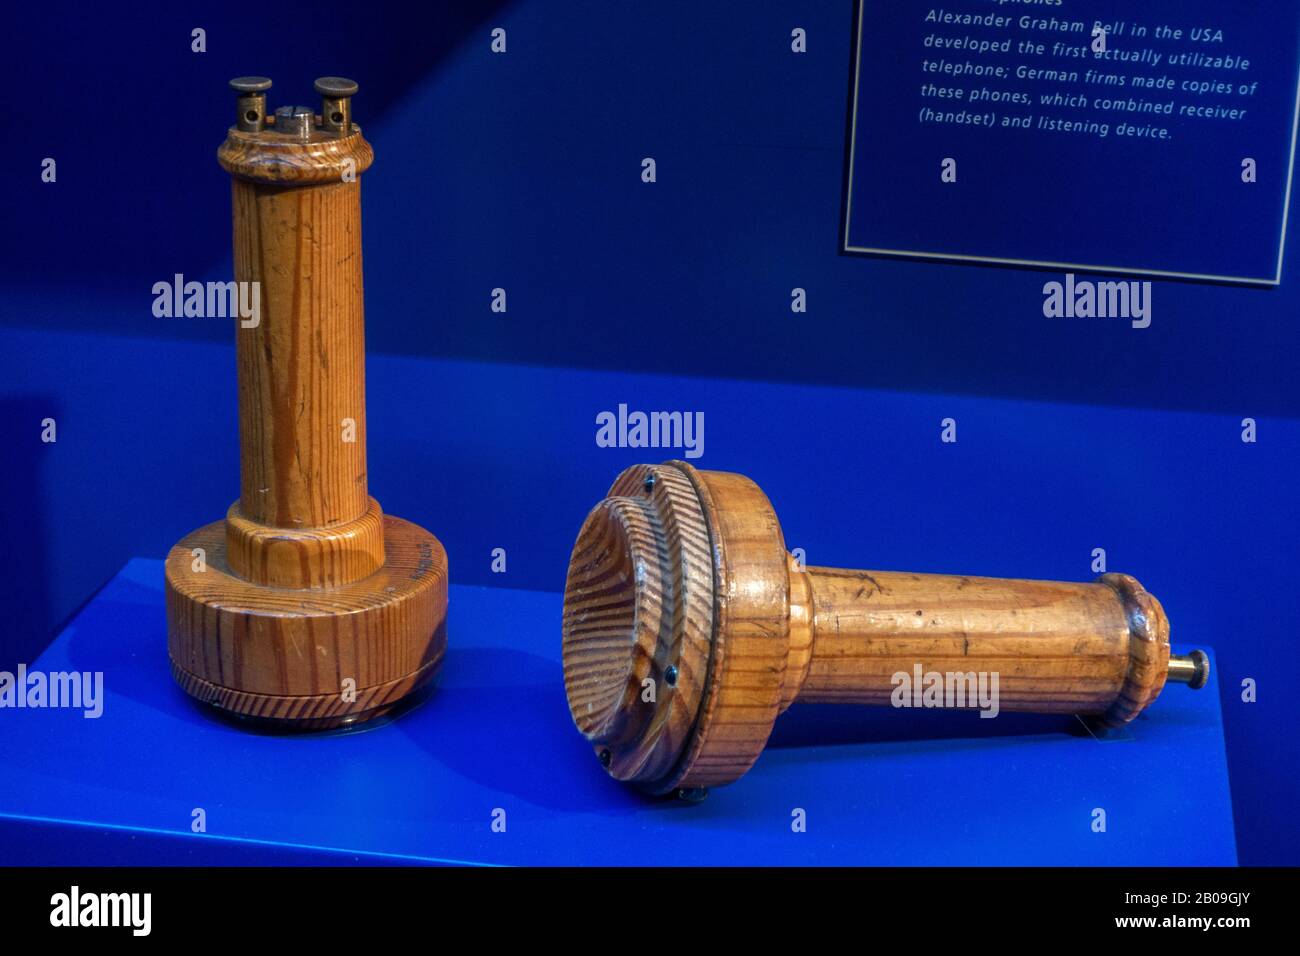 Copia tedesca dei telefoni Bell nel Museo delle Comunicazioni (parte del Museo dei Trasporti di Norimberga), Norimberga, Germania. Foto Stock